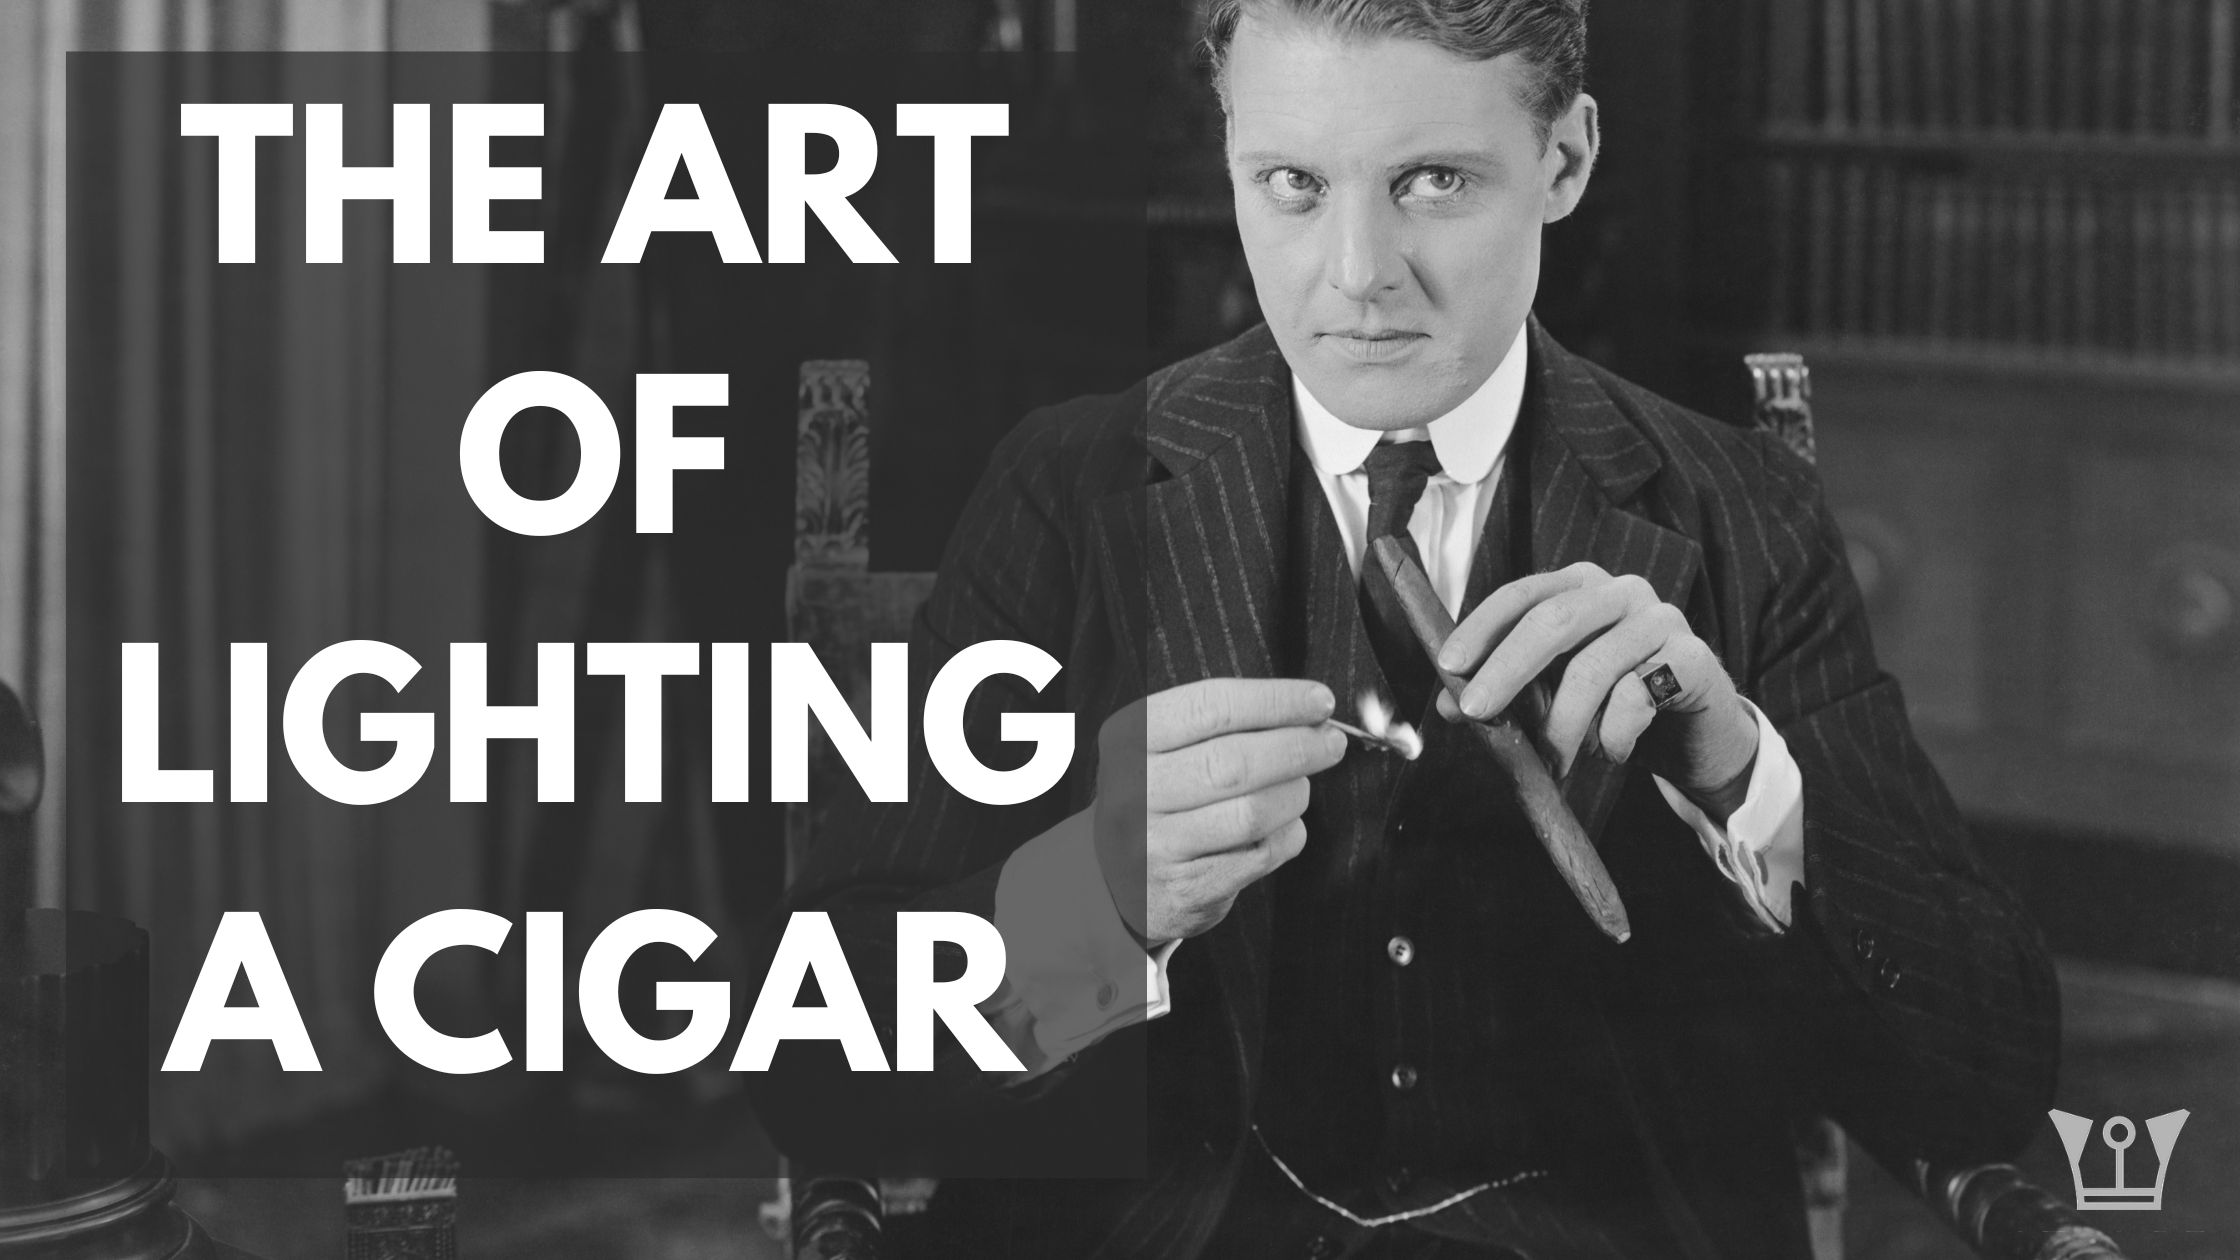 The Art of Lighting a Cigar